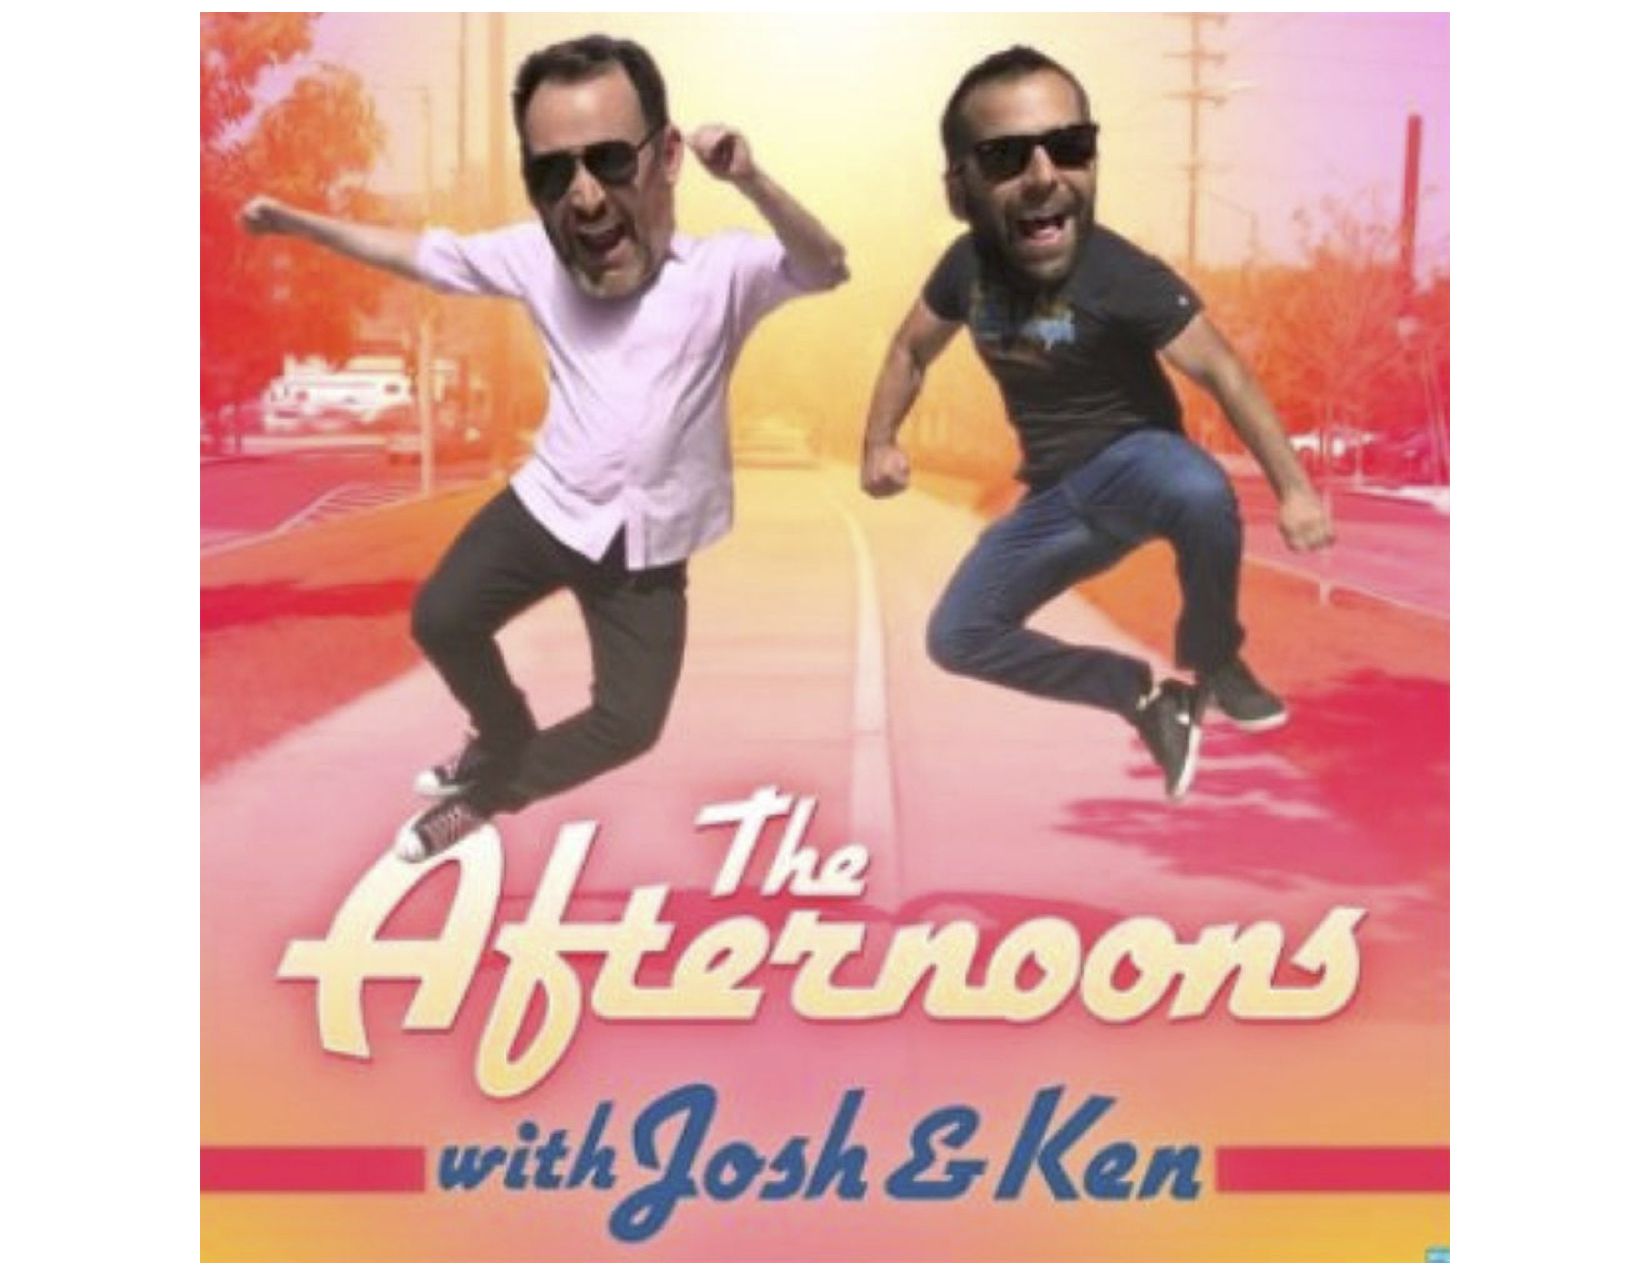 Odpoledne s komediálním podcastem Josh & Ken